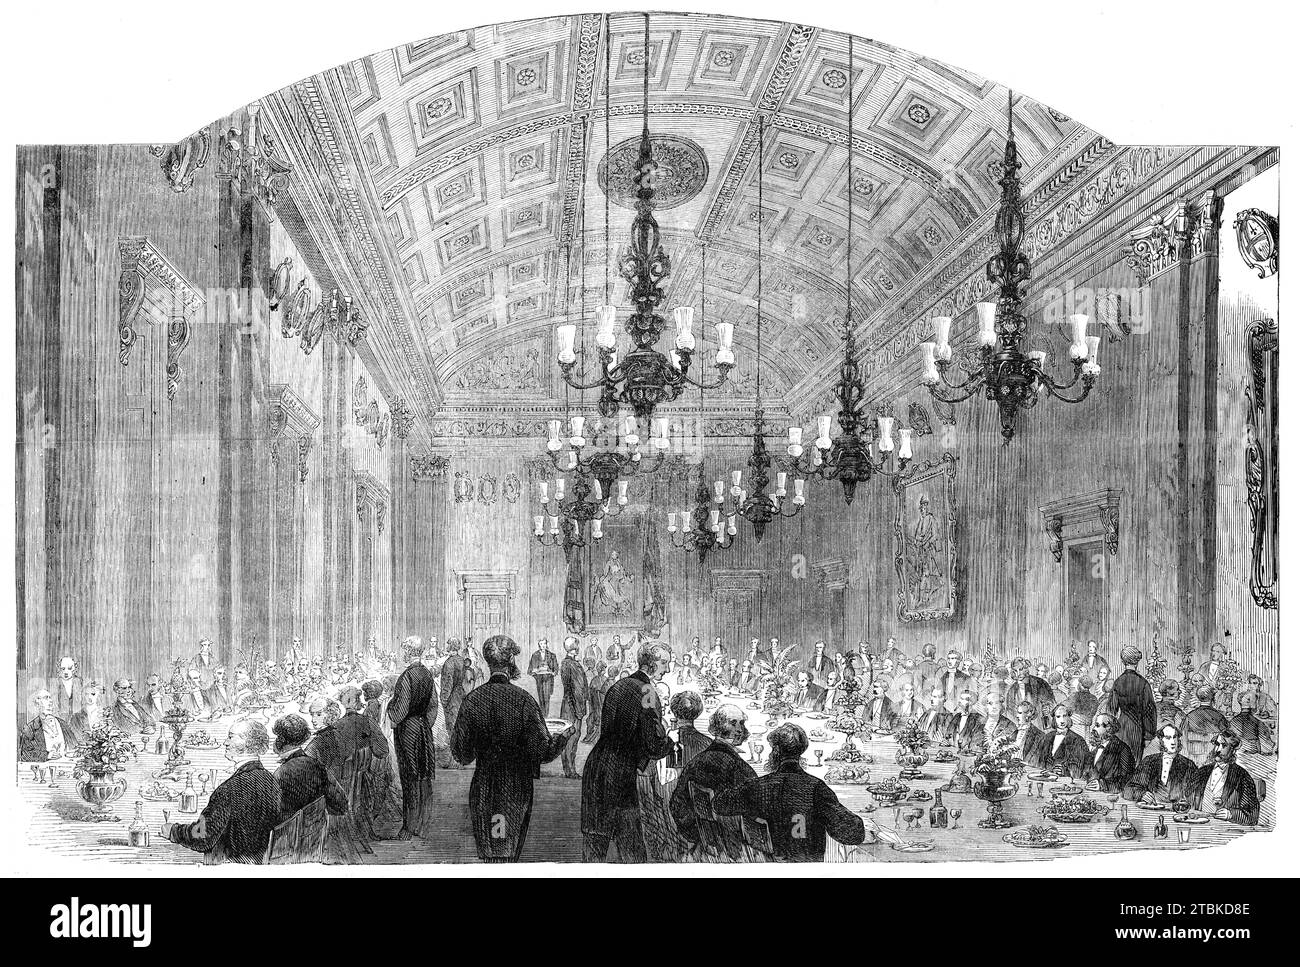 Bankett in der Fishmongers' Hall am Lord Mayor's Day, [London], 1861. "Unter den Gästen des Abends waren Mr. Dudley Mann und Mr. Yancey, die als Bevollmächtigte der Konföderierten Staaten von Nordamerika in dieses Land gekommen sind... Fishmongers' Hall befindet sich am nordwestlichen Fuß der London-Brücke. Er wurde 1830 umgebaut und ist der dritte der Hallen der Firma, die fast an diesem Standort liegt... der Bankettsaal, von dem wir eine Gravur geben... ist 73 m groß. Bei 38 Fuß und 33 Fuß. Hoch, und hat Sienna scagliola korinthische Pilaster, zwischen denen die Arme der Wohltäter und vorbei p Stockfoto